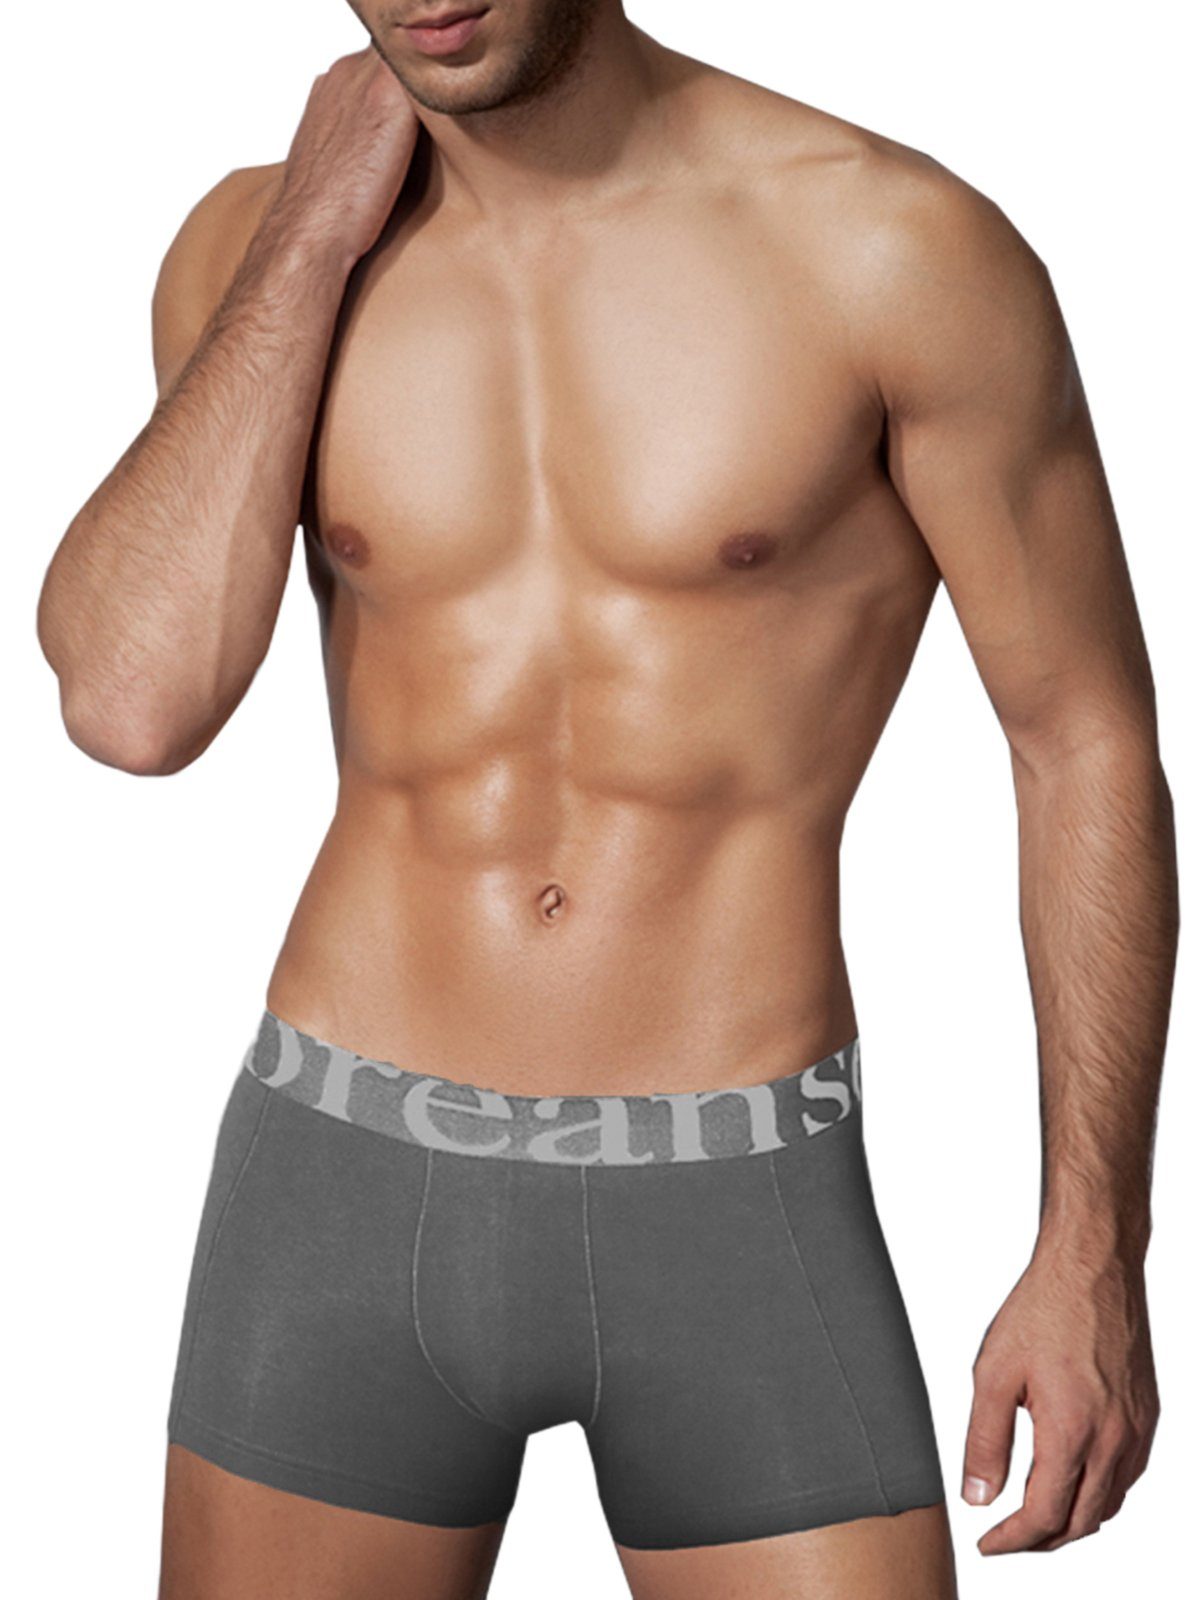 Doreanse Underwear Boxershorts hochwertige Herren Boxer Pants Männer Hipster DA1777 Smoke Grau